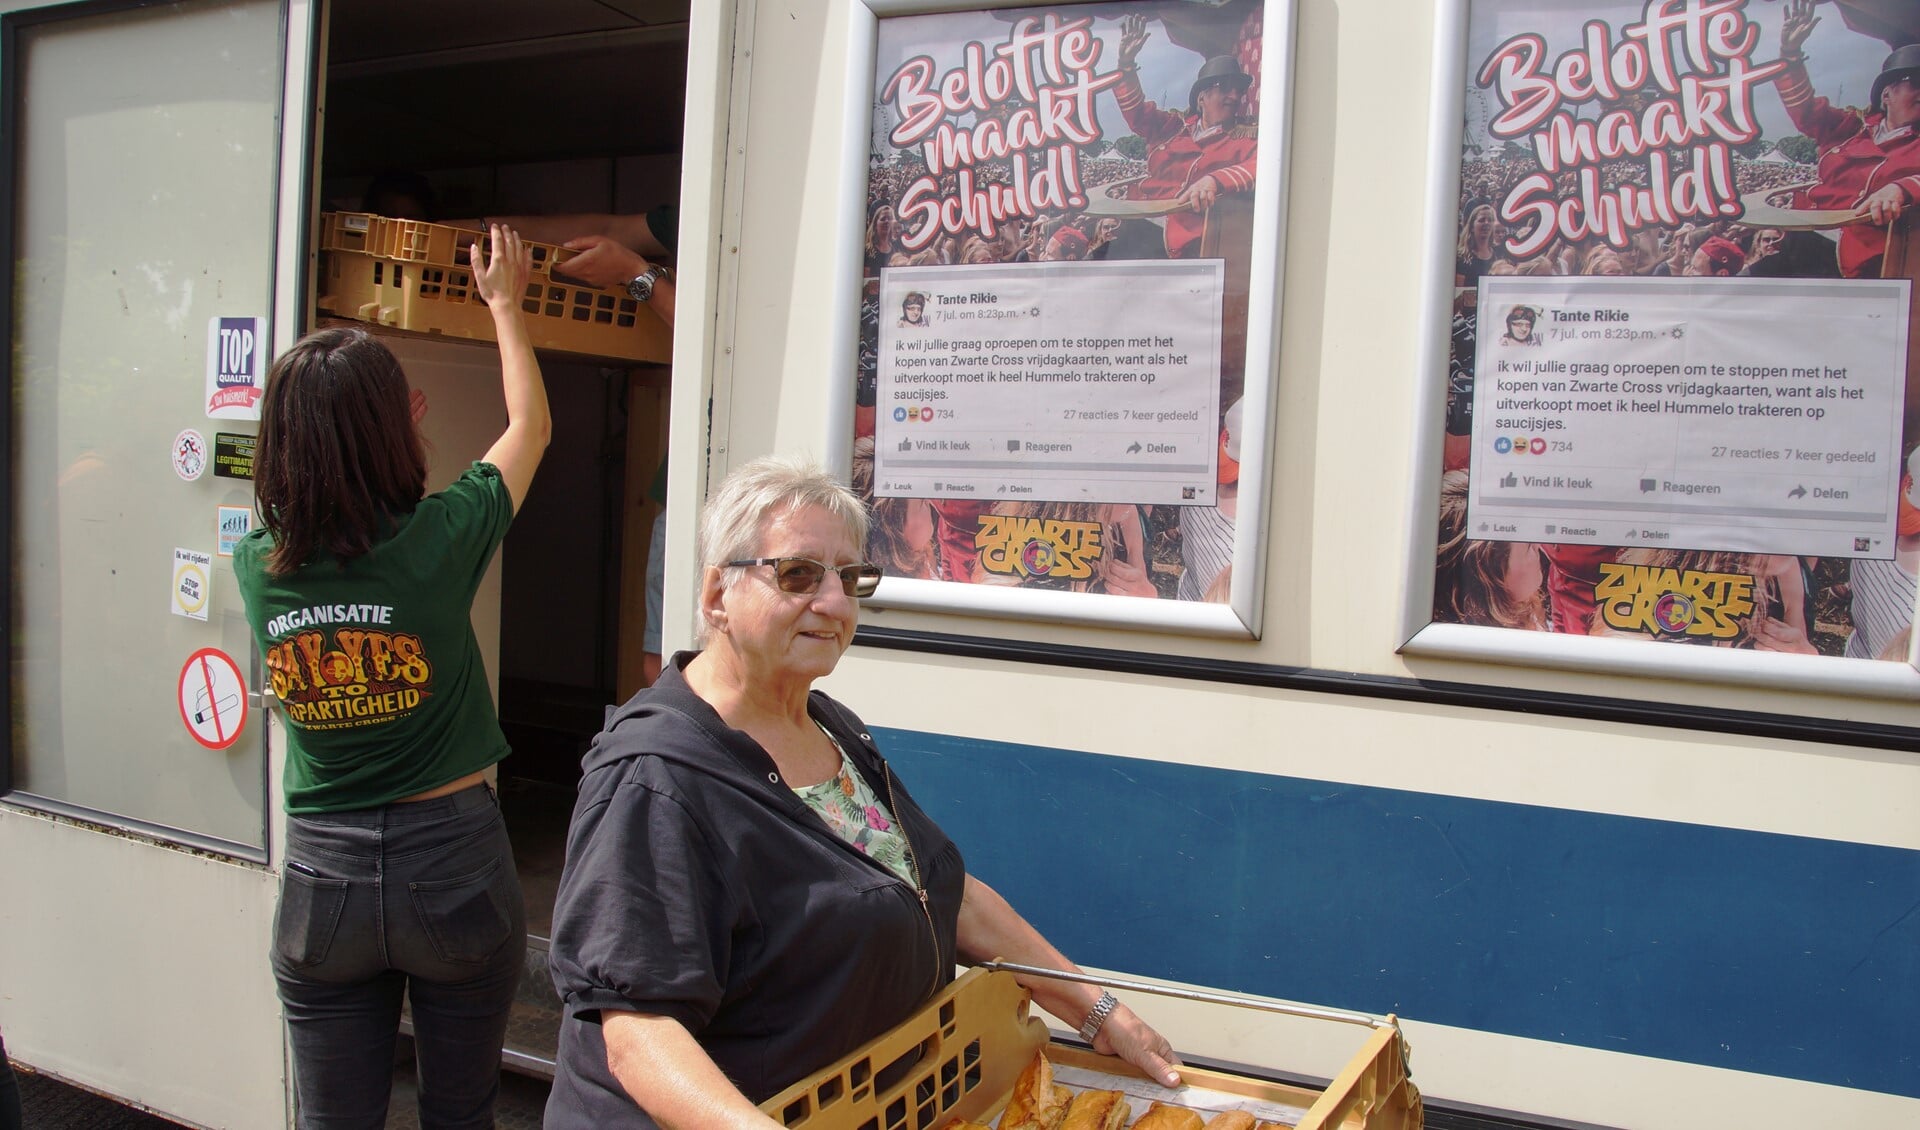 Tante Rikie stapt uit de SRV-wagen met een bak saucijzenbroodjes. Op de achtergrond de tweet waarin ze belooft Hummelo te trakteren. Foto: Gerwin Nijkamp